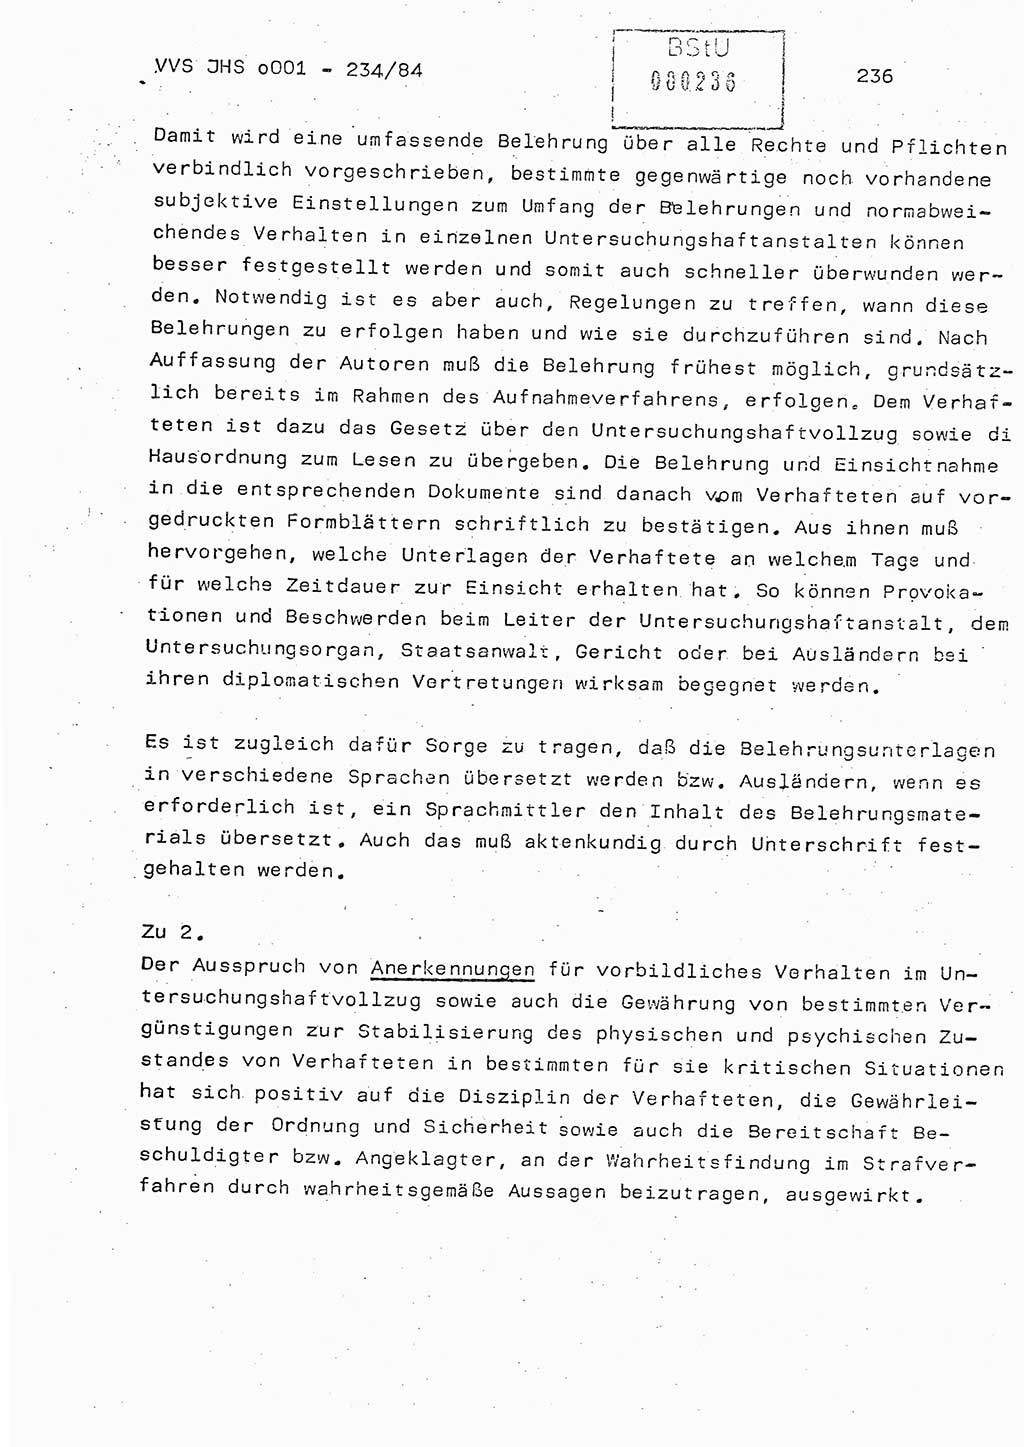 Dissertation Oberst Siegfried Rataizick (Abt. ⅩⅣ), Oberstleutnant Volkmar Heinz (Abt. ⅩⅣ), Oberstleutnant Werner Stein (HA Ⅸ), Hauptmann Heinz Conrad (JHS), Ministerium für Staatssicherheit (MfS) [Deutsche Demokratische Republik (DDR)], Juristische Hochschule (JHS), Vertrauliche Verschlußsache (VVS) o001-234/84, Potsdam 1984, Seite 236 (Diss. MfS DDR JHS VVS o001-234/84 1984, S. 236)